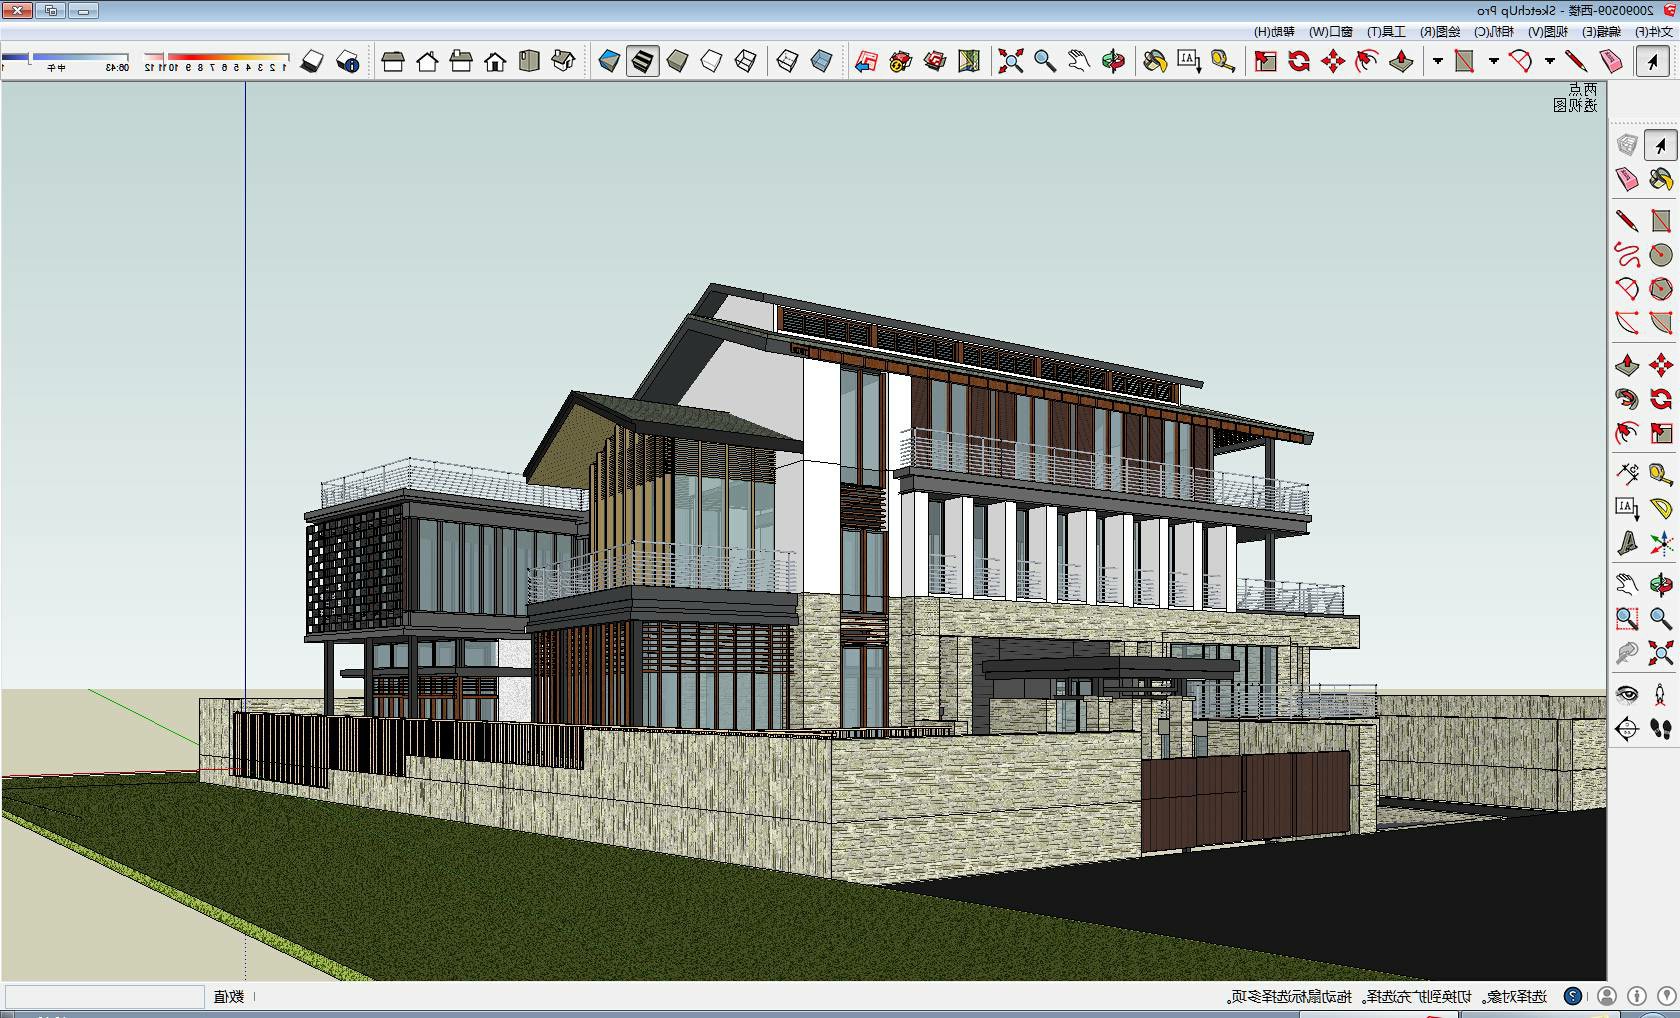 新中式建筑9zm SketchUp建筑模型下载 第1张